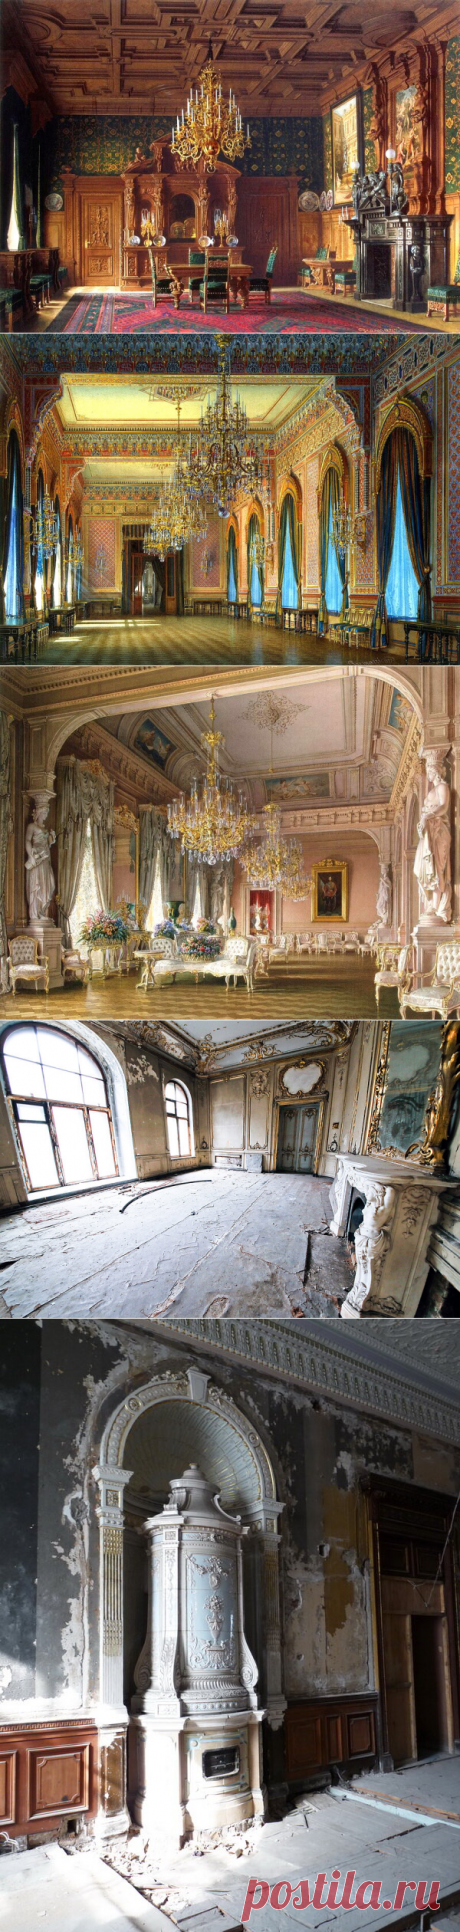 Заброшенные дворцы Санкт-Петербурга... Утрачены или реставрации быть? | София@Piter | Яндекс Дзен